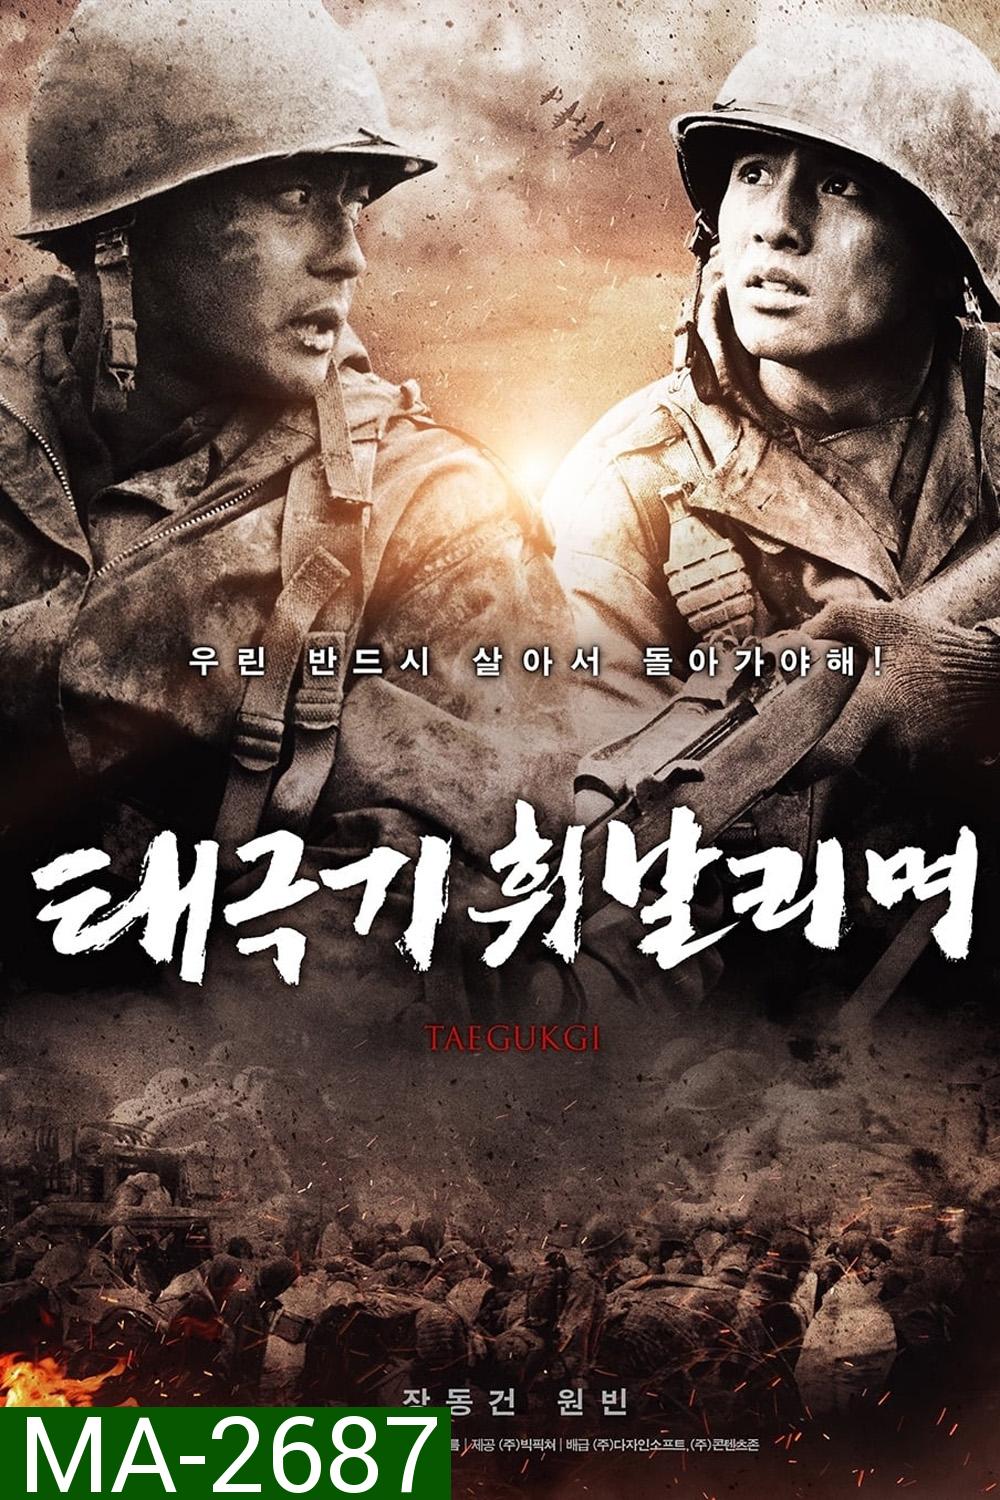 เทกึกกี เลือดเนื้อ เพื่อฝัน วันสิ้นสงคราม Tae Guk Gi The Brotherhood of War (2004)